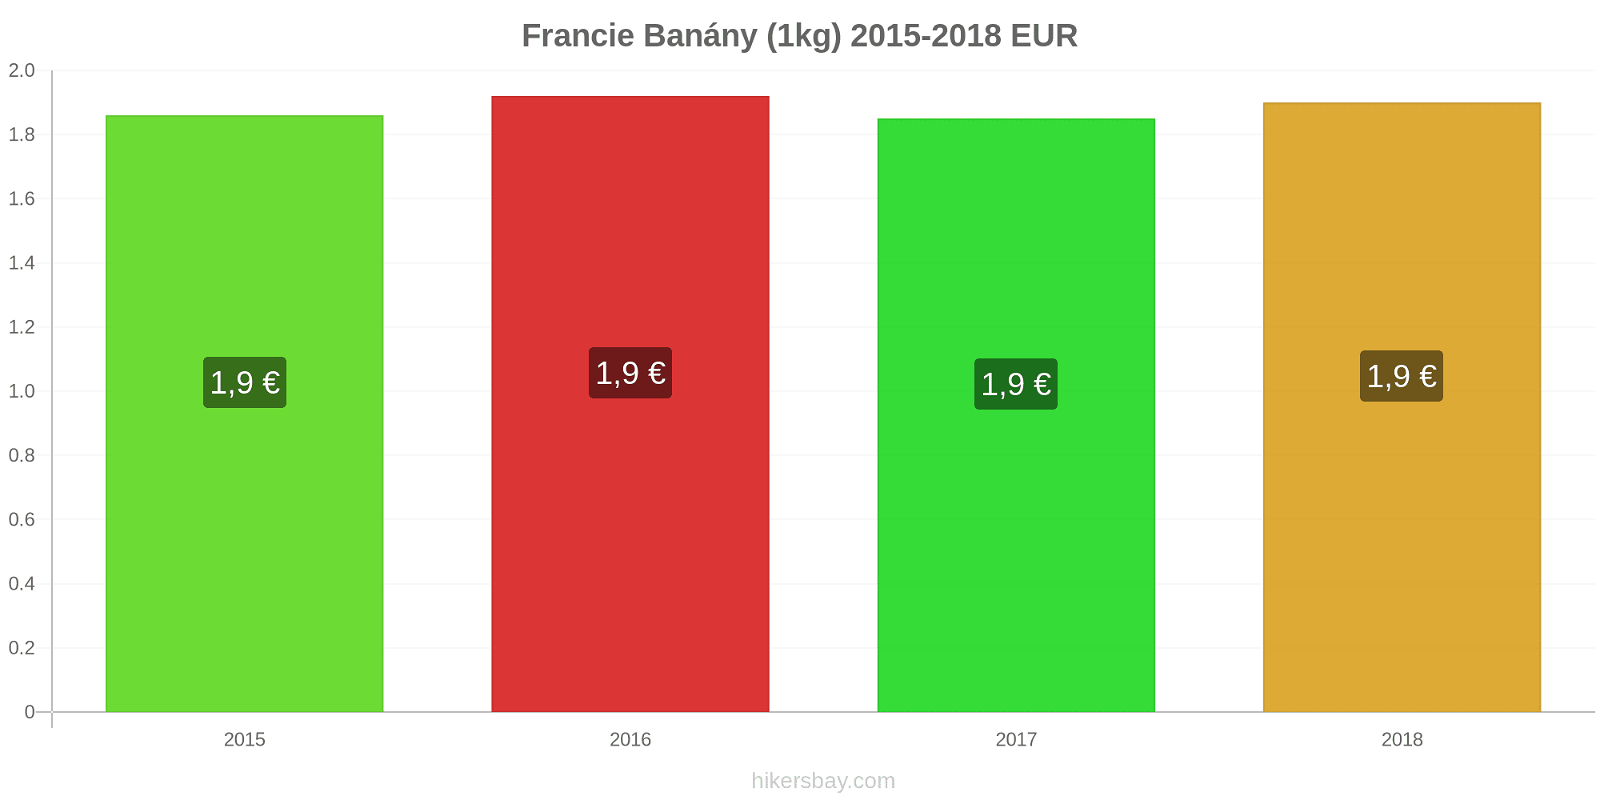 Francie změny cen Banány (1kg) hikersbay.com